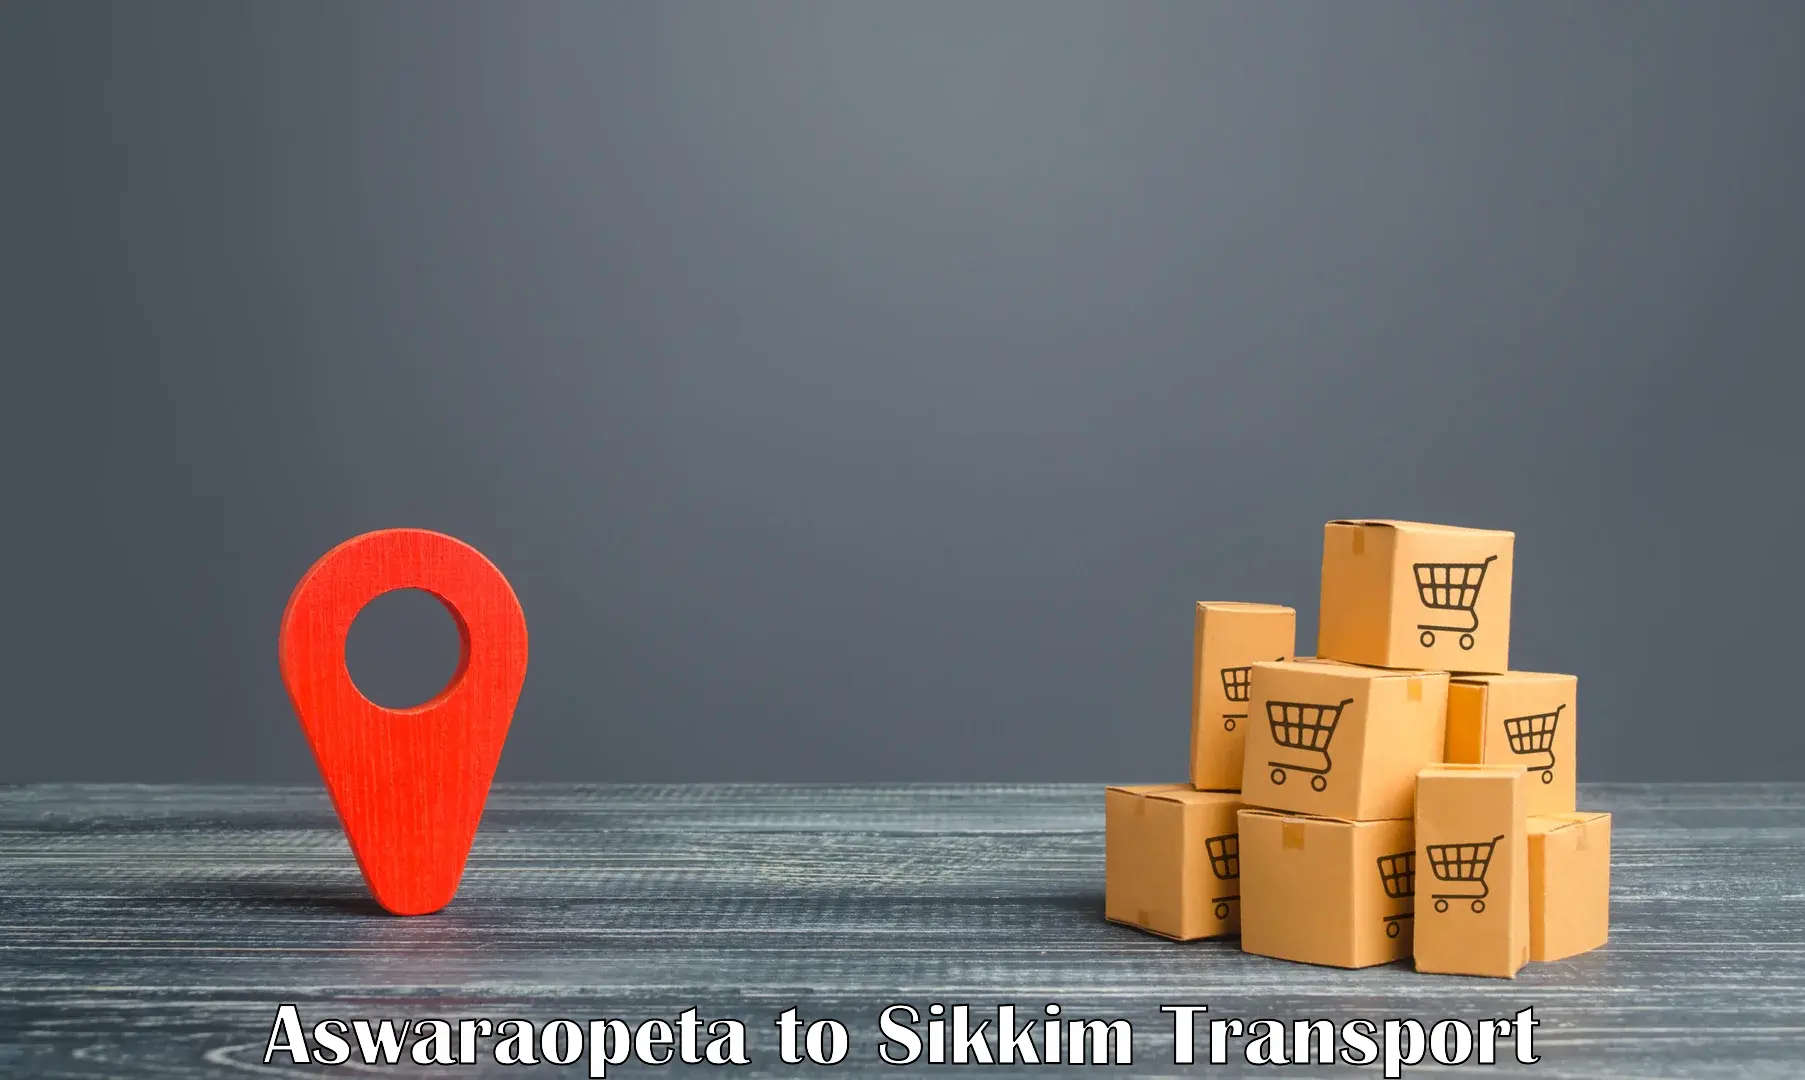 Shipping services Aswaraopeta to Sikkim